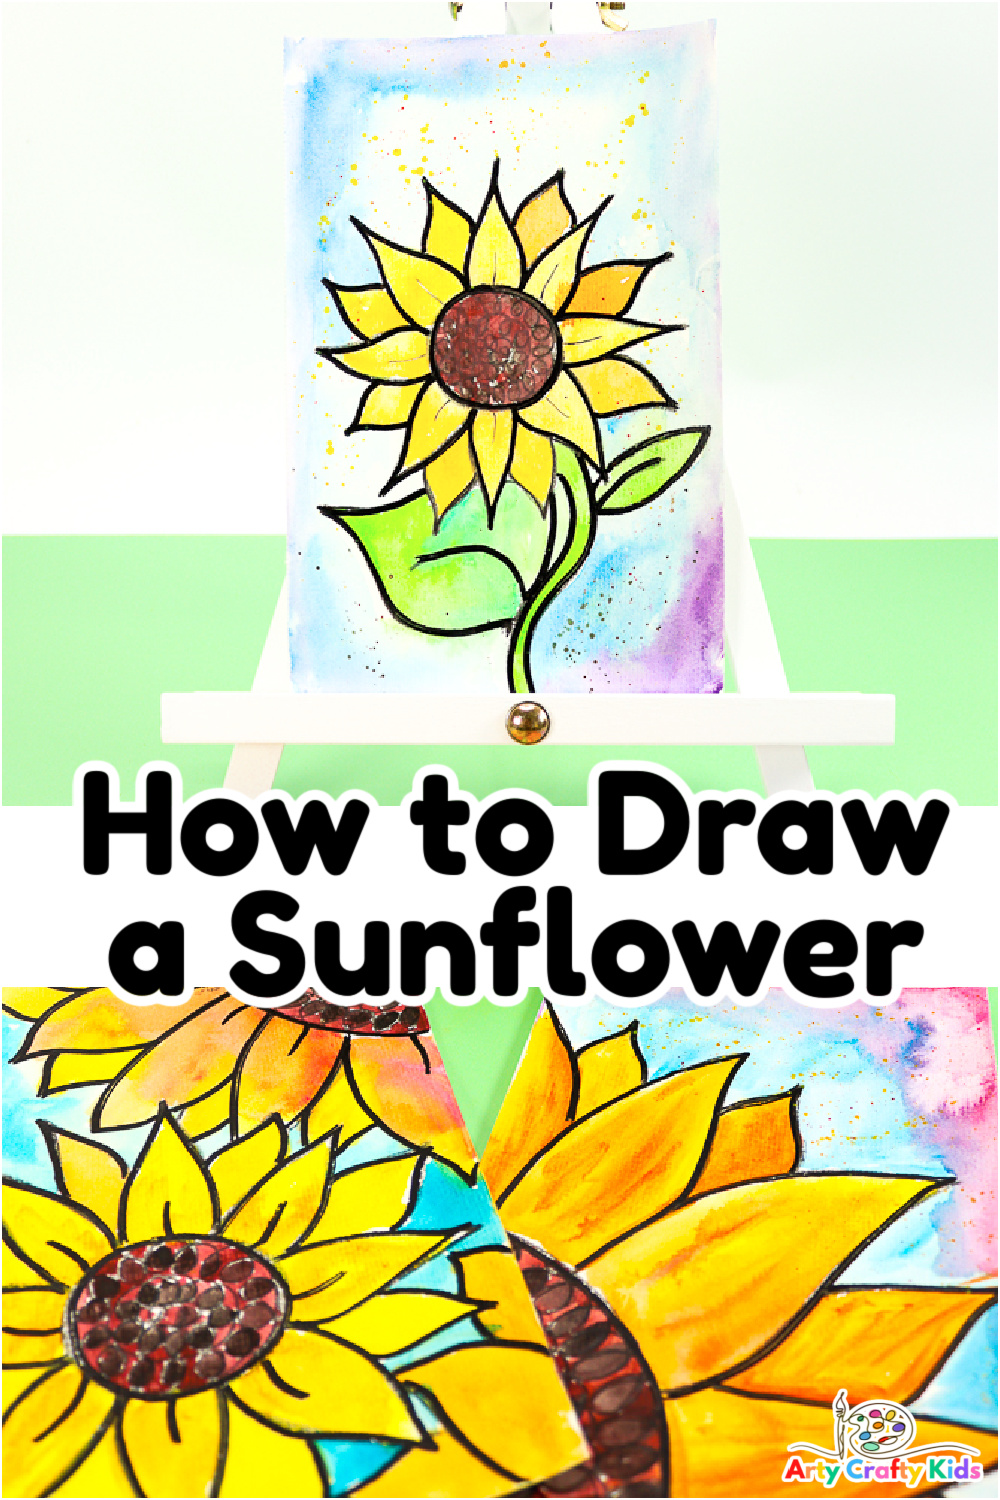 Sunflower Drawing - ReusableArt.com